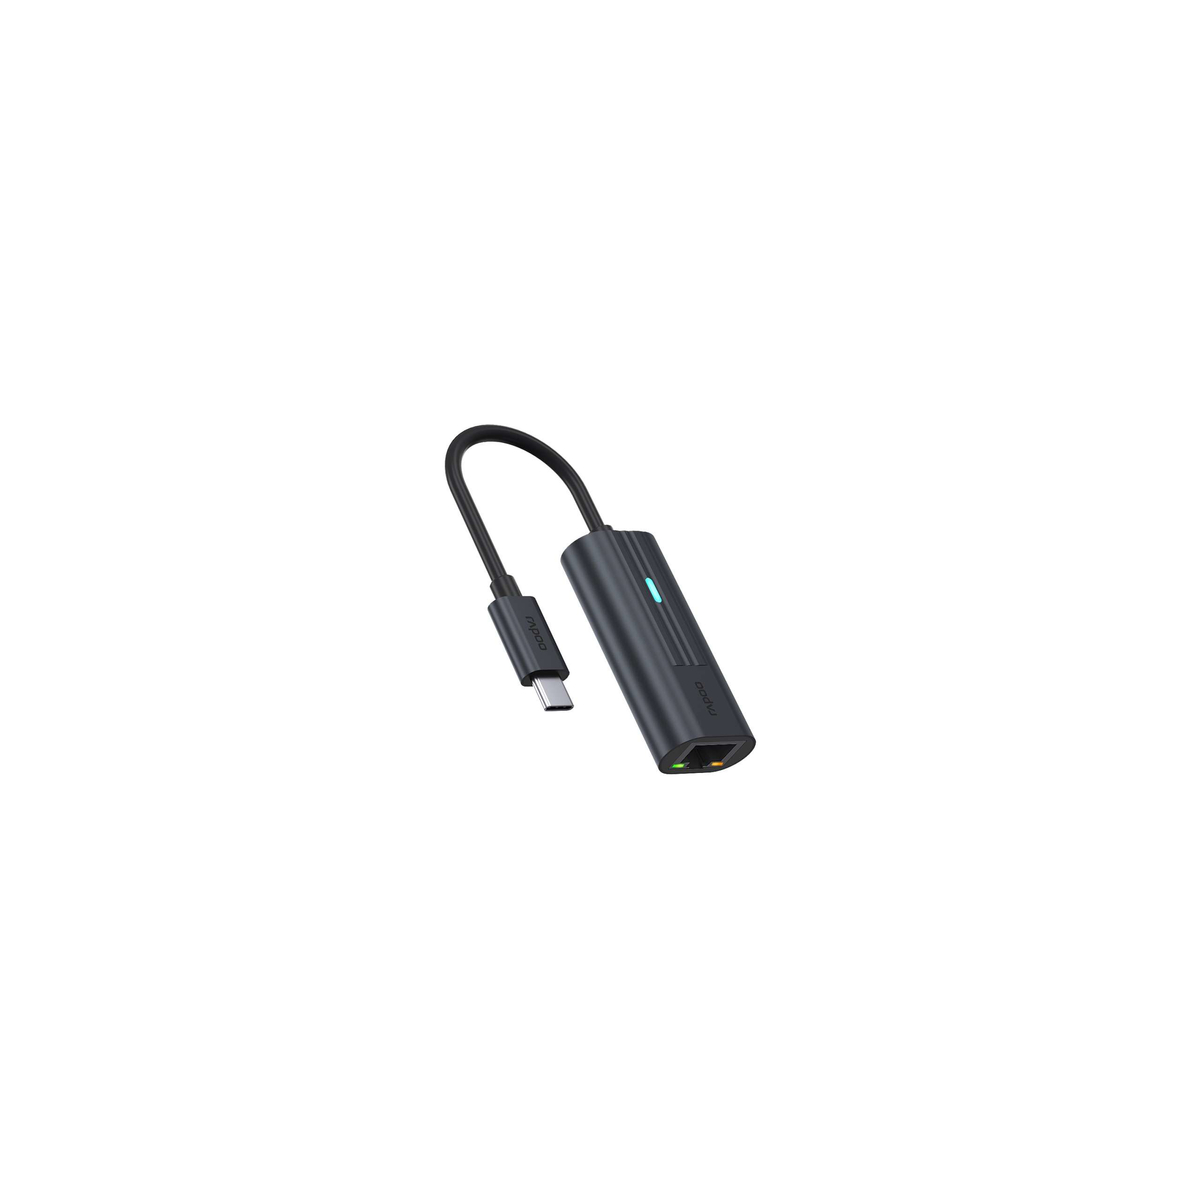 USB-C to Gigabit LAN Adapter